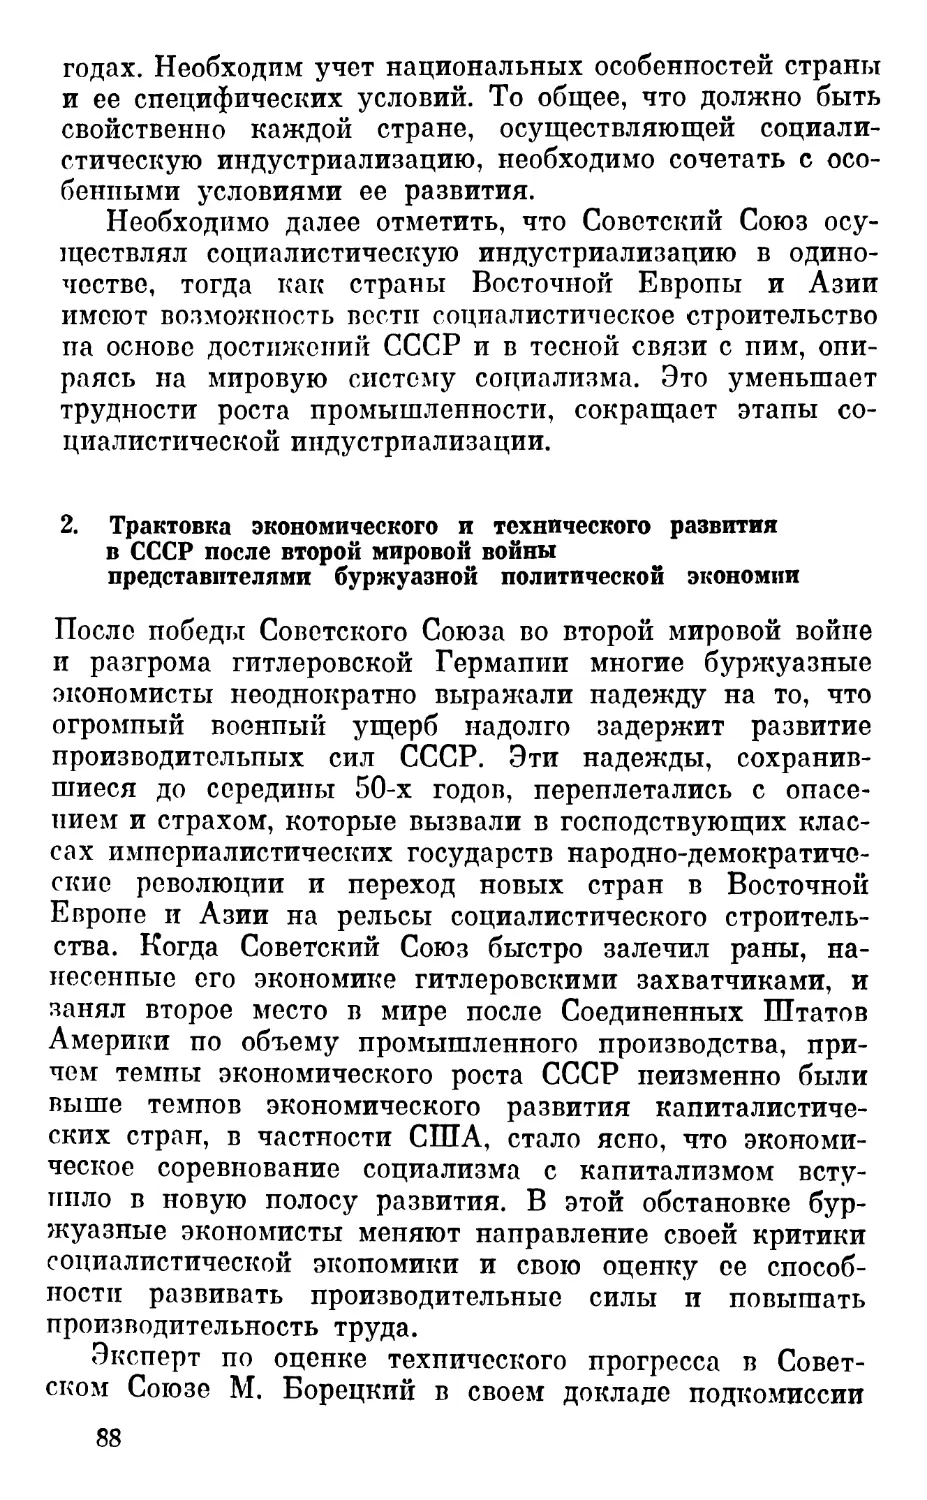 2. Трактовка экономического и технического развития в СССР после второй мировой войны представителями буржуазной политической экономии